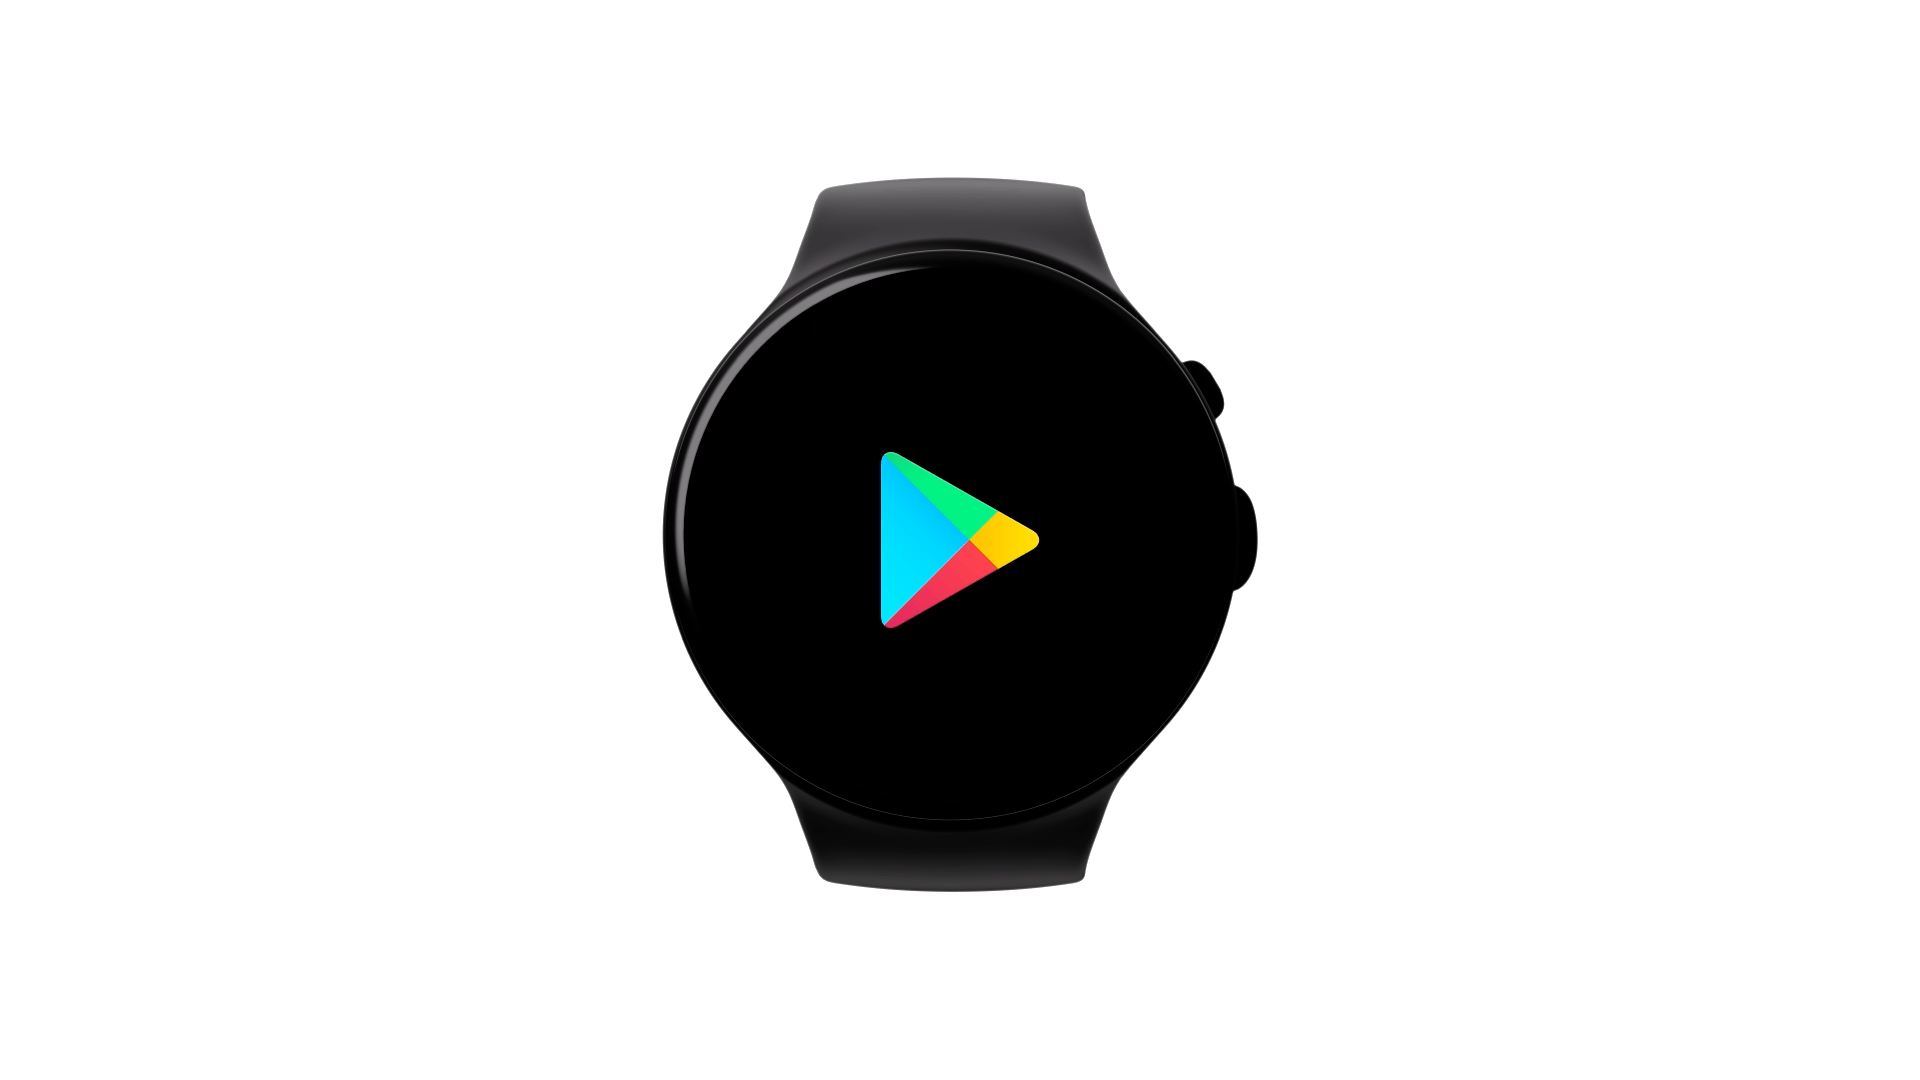 Verschiedene App-Logos, darunter Spotify, adidas Running, LINE und weitere sind kreisförmig um eine Smartwatch angeordnet.